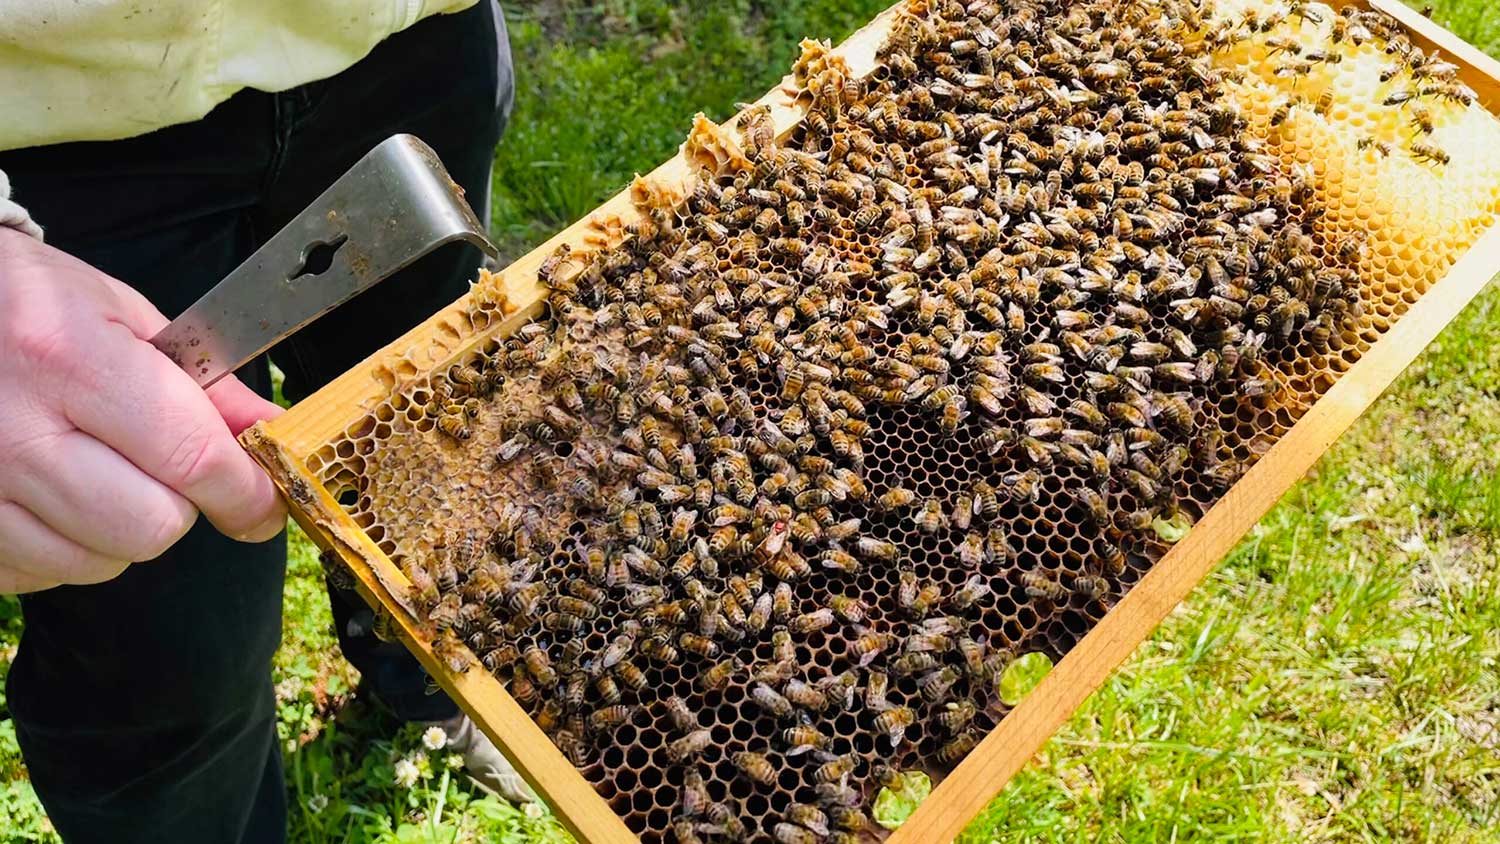 Honey bees hive